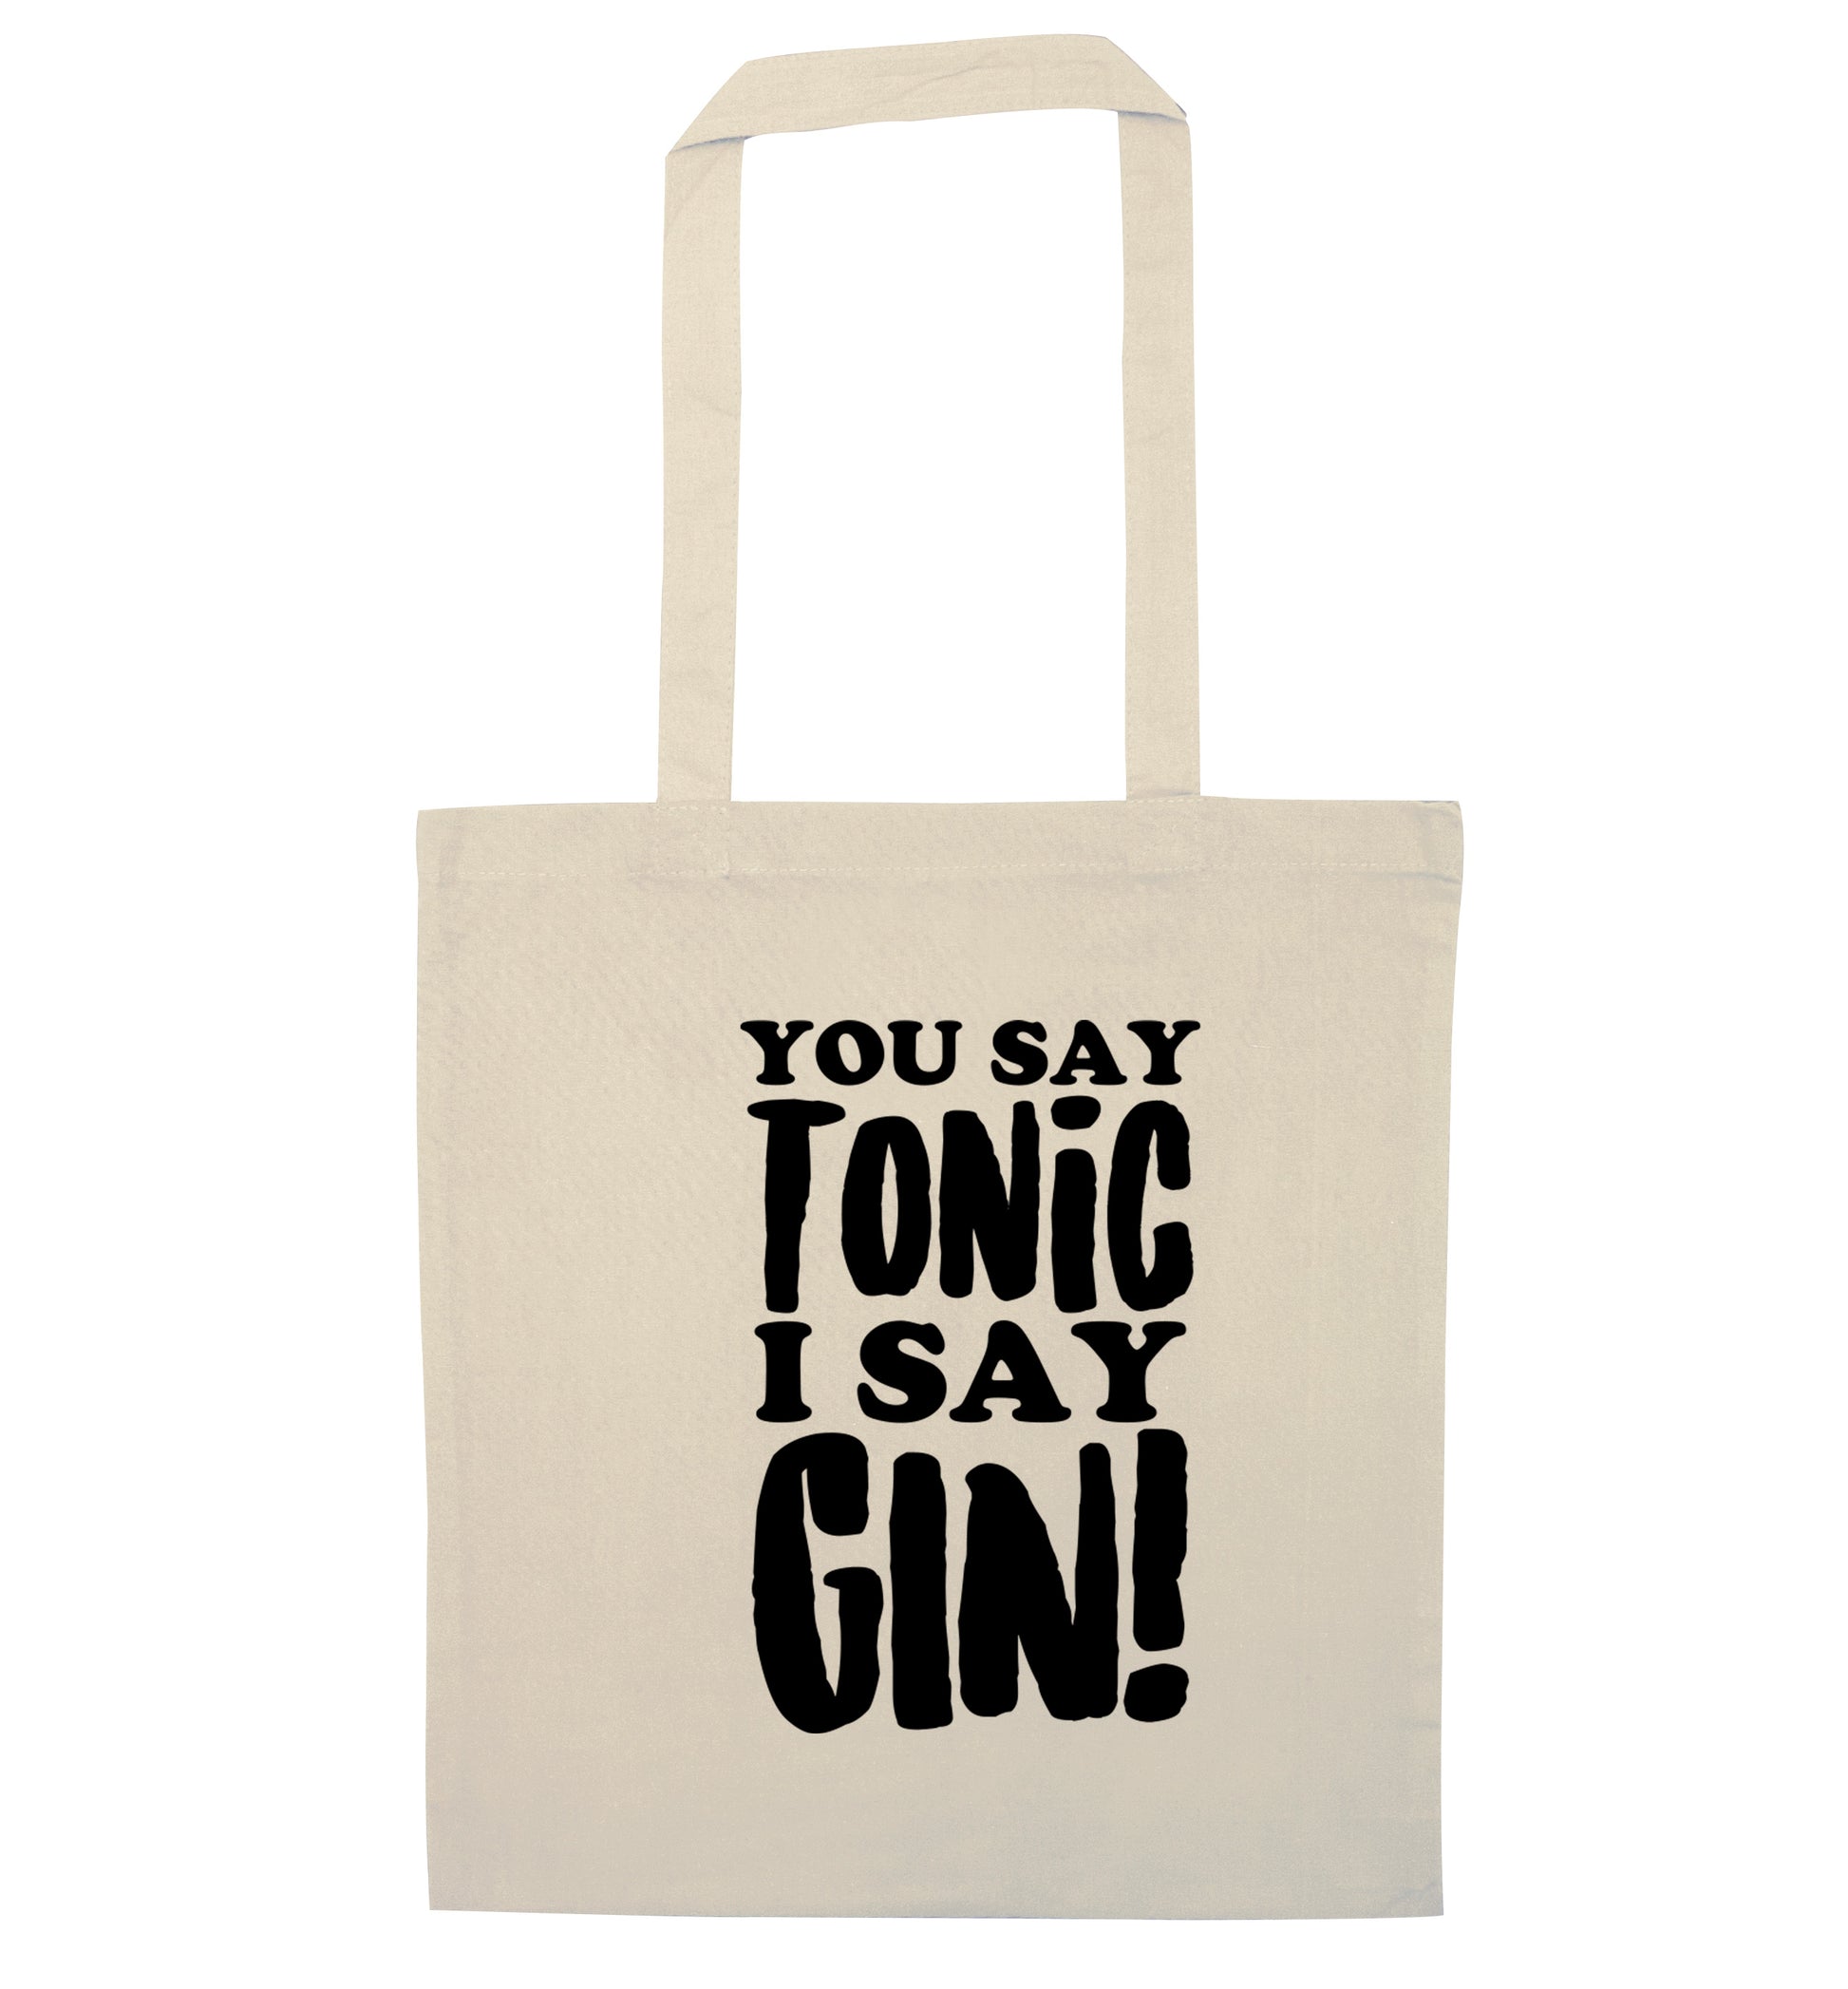 You say tonic I say gin! natural tote bag